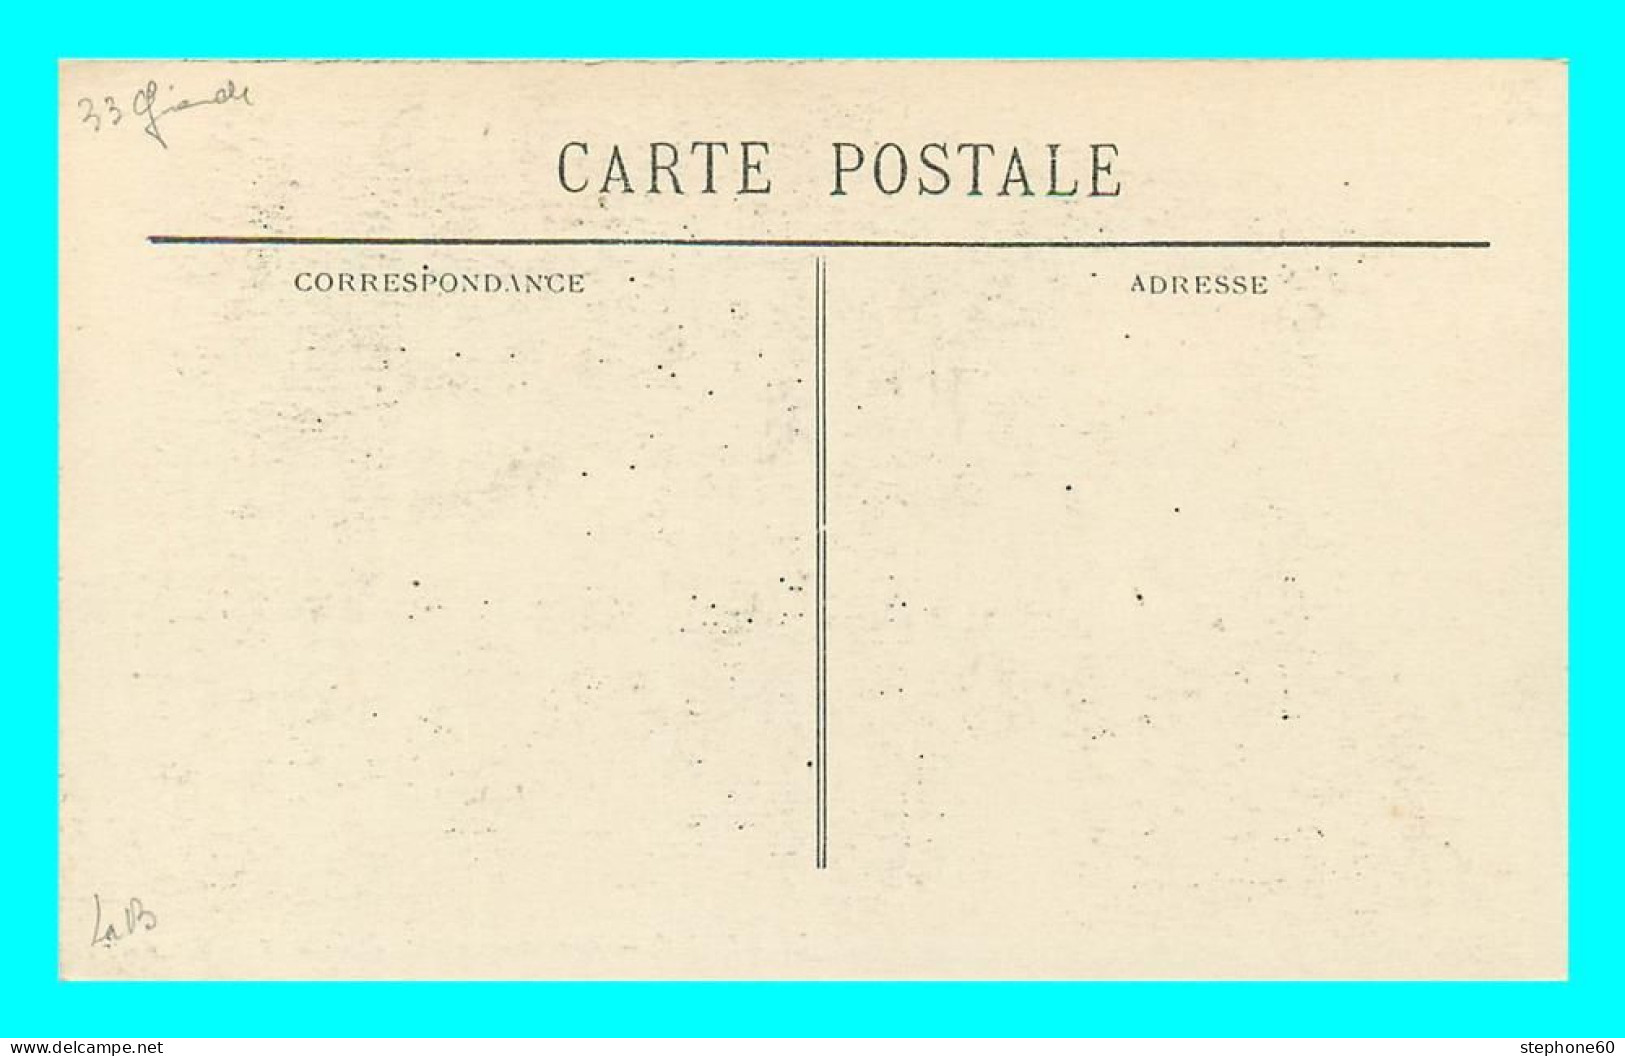 A830 / 191 33 - LIBOURNE Vue Générale Prise De Fronsac - Libourne